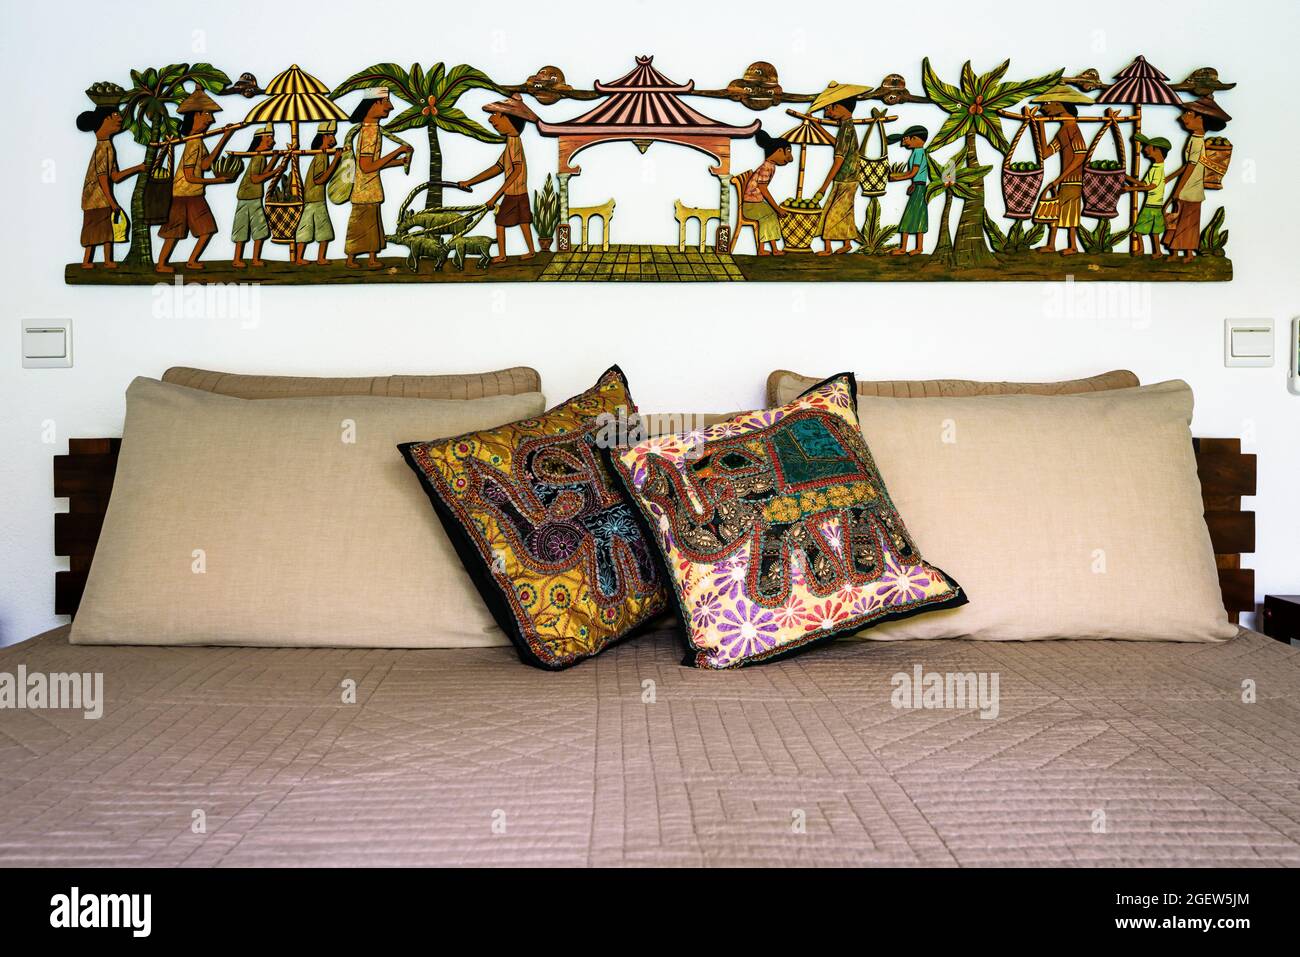 Tangalle, Sri Lanka - 31 octobre 2017 : intérieur d'un hôtel ou d'une maison résidentielle, lit avec oreillers et coussins dans un style ethnique. Chambre à coucher intérieur de maison en indien Banque D'Images